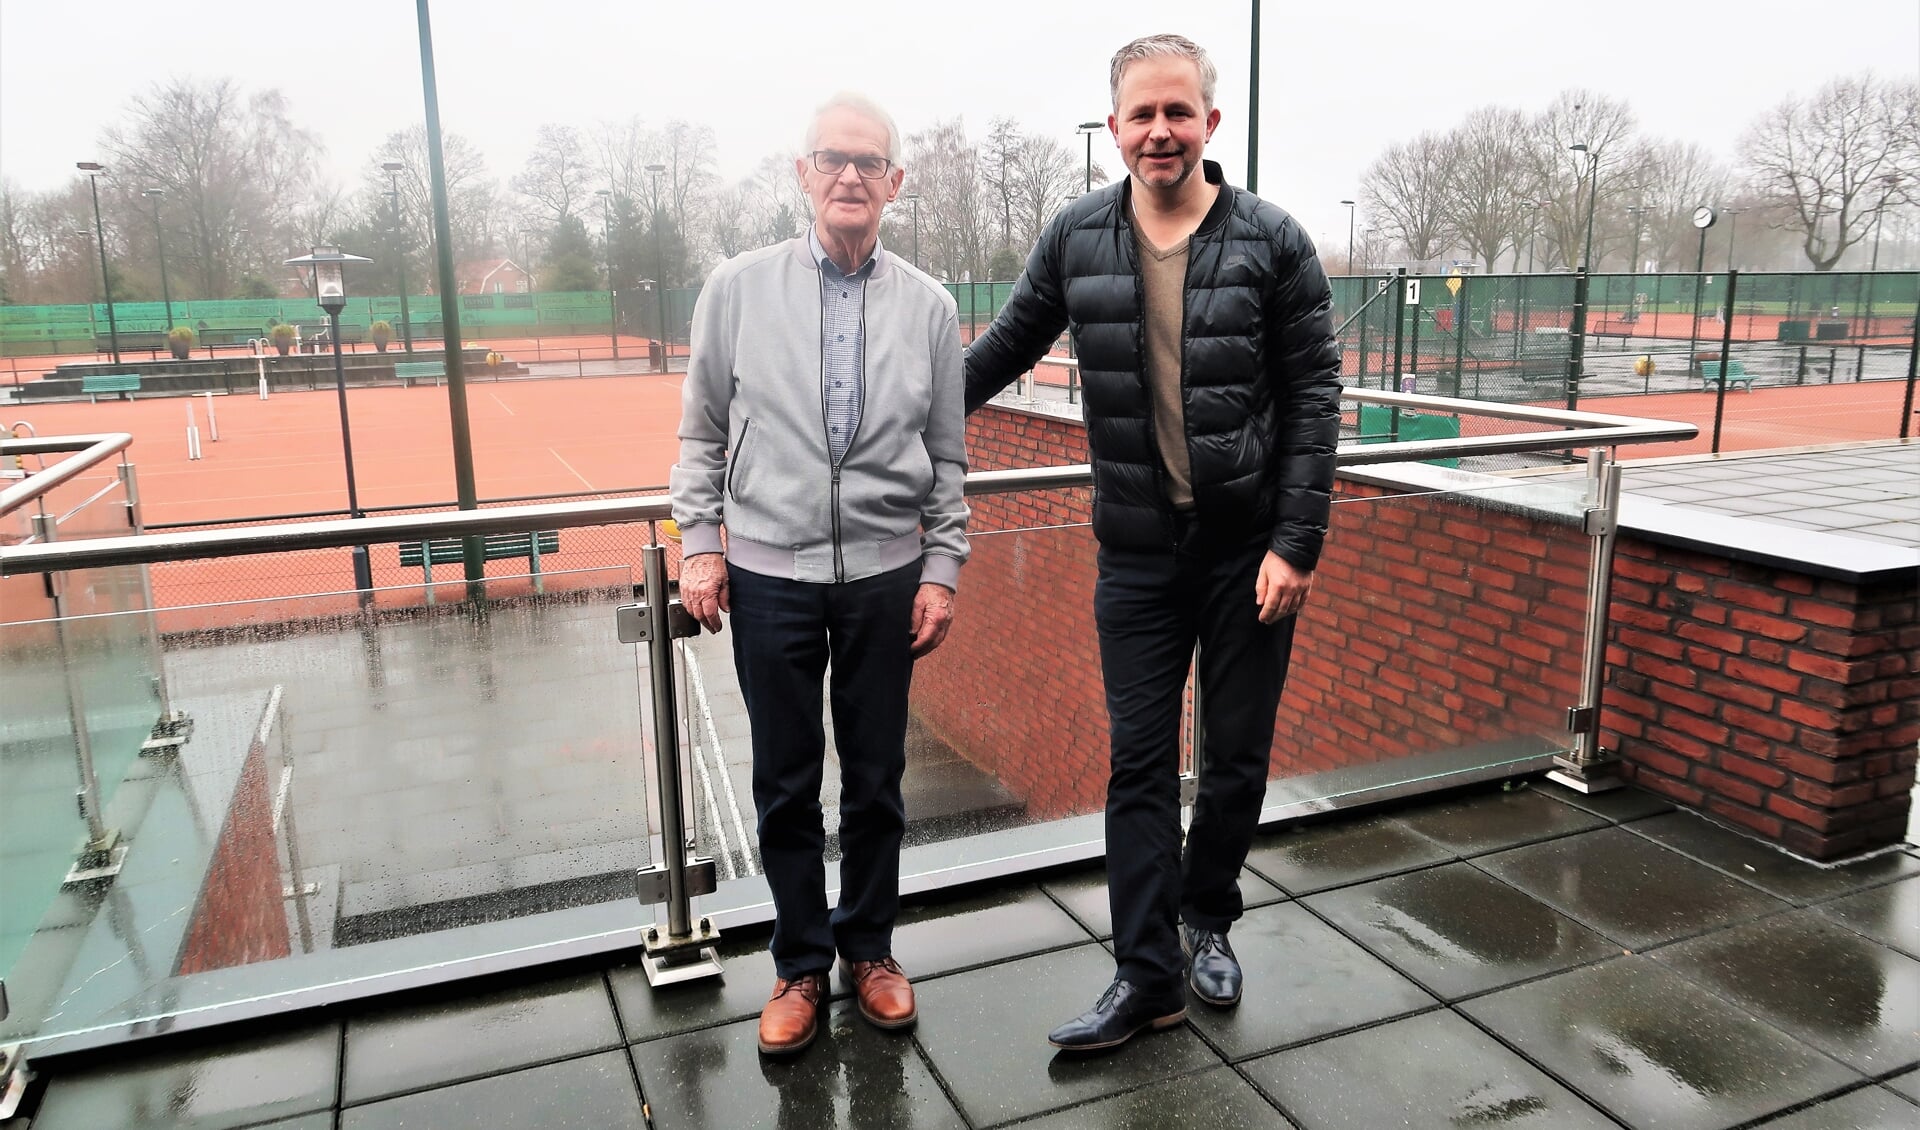 Links Hans Tops en rechts Nicky Groot Kormelink van de de Groenlose Tennisclub (GTC) op het tennispark ‘De Blanckenborg’.